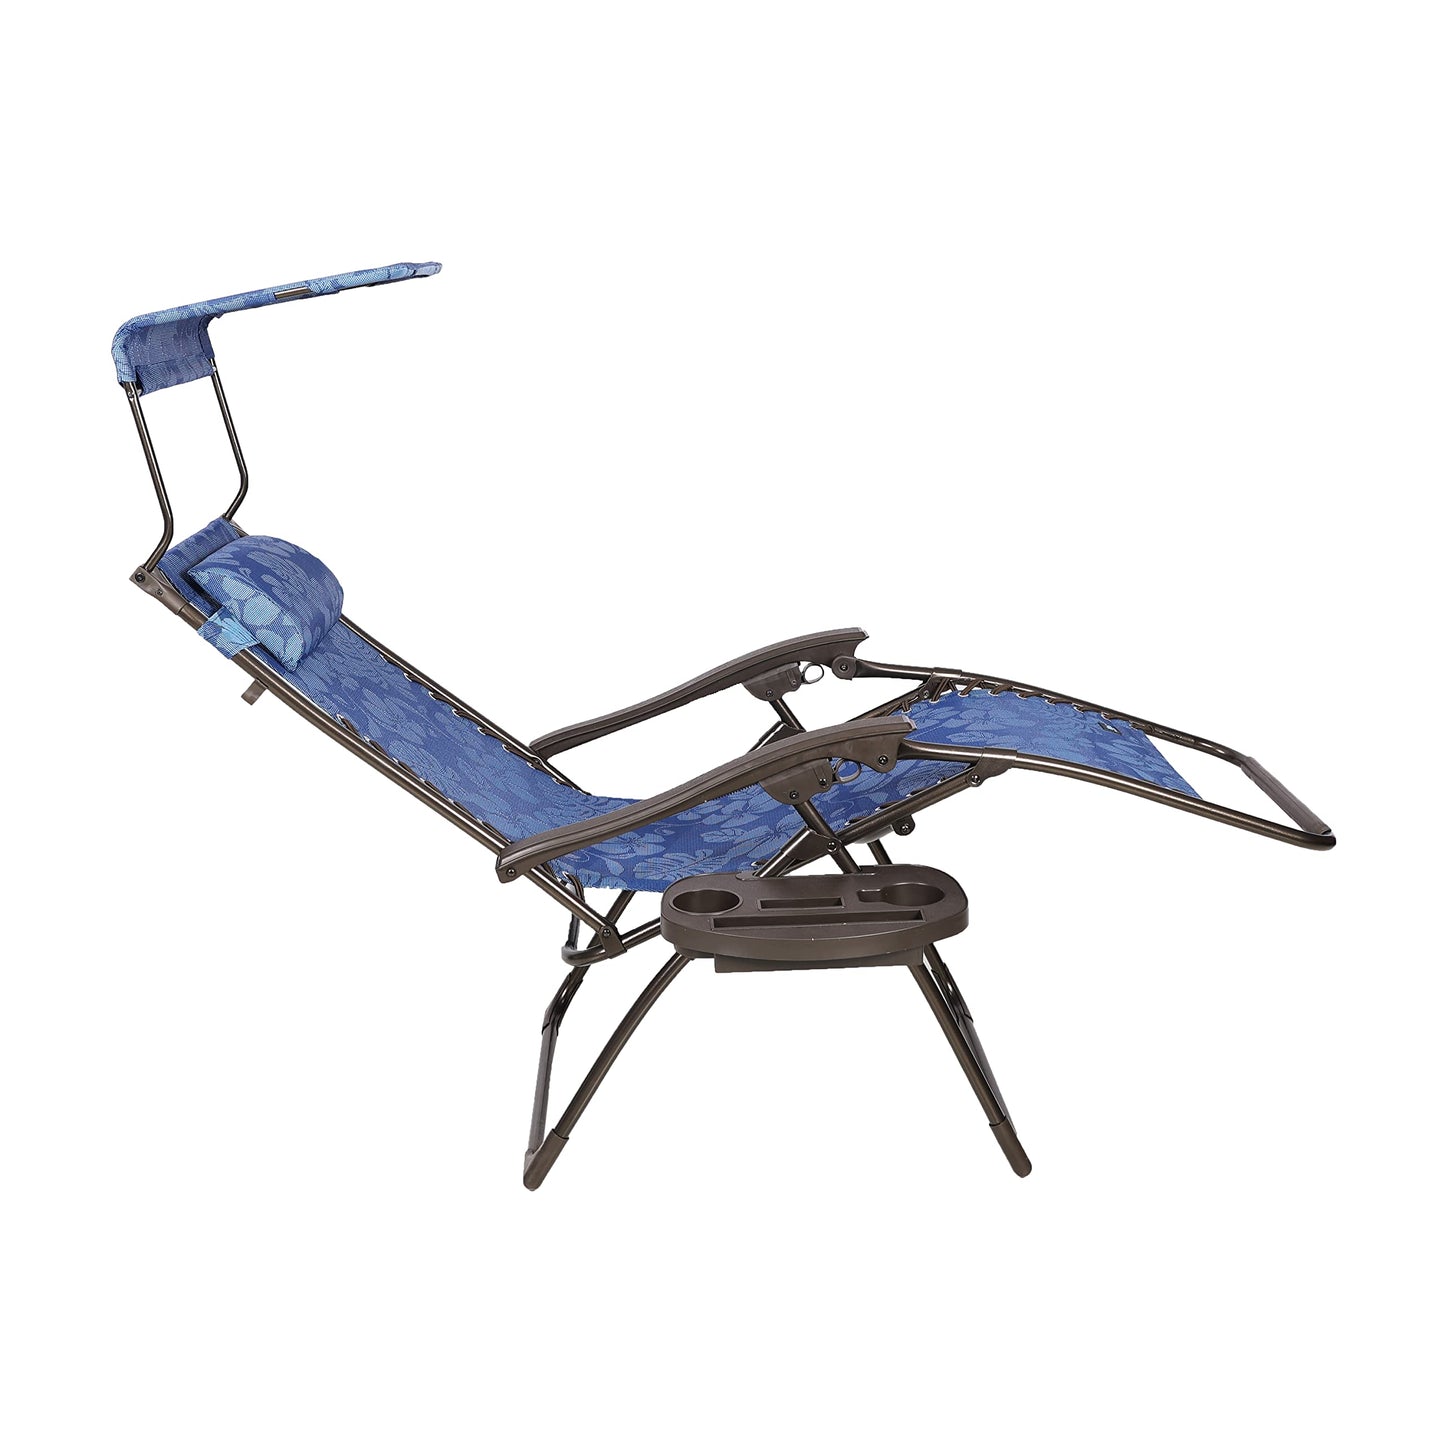 Chaise de 66 cm de large modèle Zero Gravity avec auvent, oreiller et plateau de boisson pliable pour pelouse, terrasse, terrasse, chaise longue réglable, 136 kg. Résistant aux intempéries et à la rouille, lot unique de fleurs bleues 66 cm